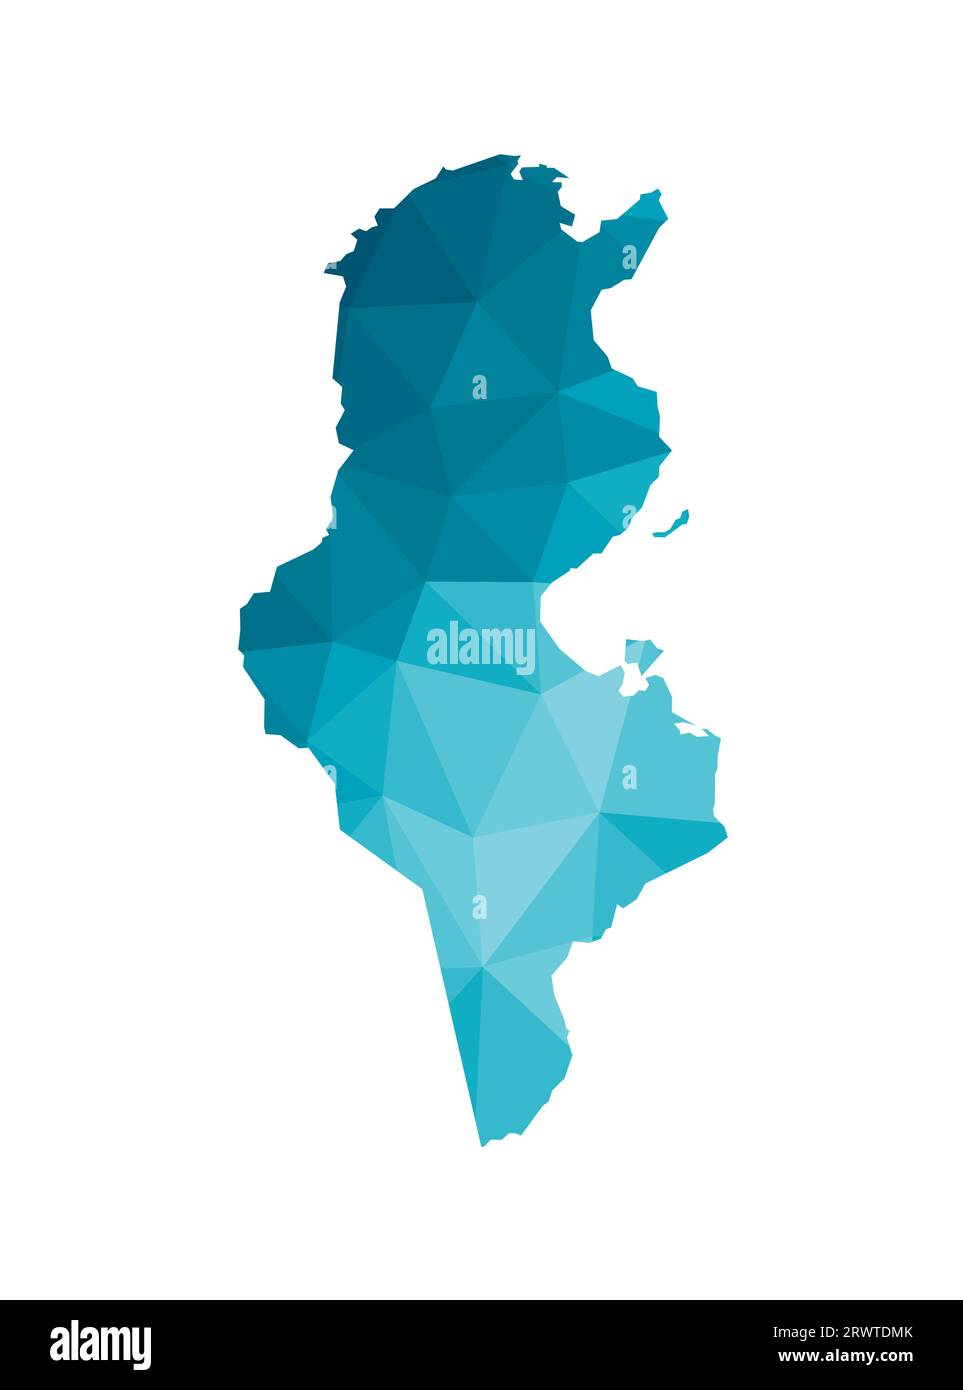 Vektor isolierte Illustration Symbol mit vereinfachter blauer Silhouette der Republik Tunesien Karte. Polygonaler geometrischer Stil, dreieckige Formen. Weißer Rücken Stock Vektor